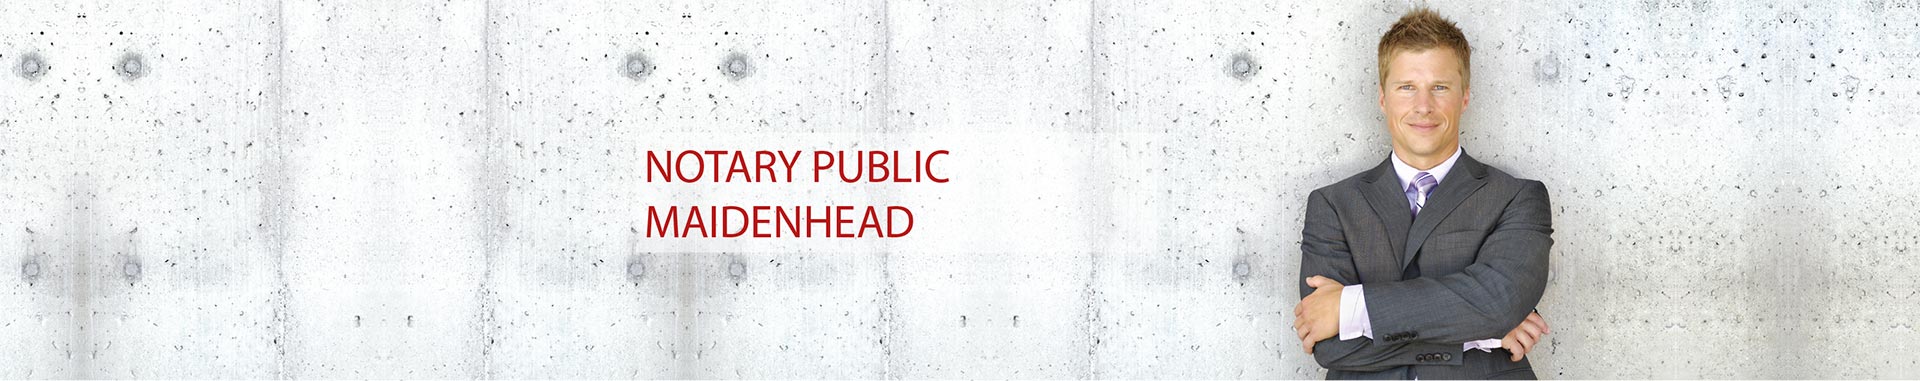 Notary Public Maidenhead